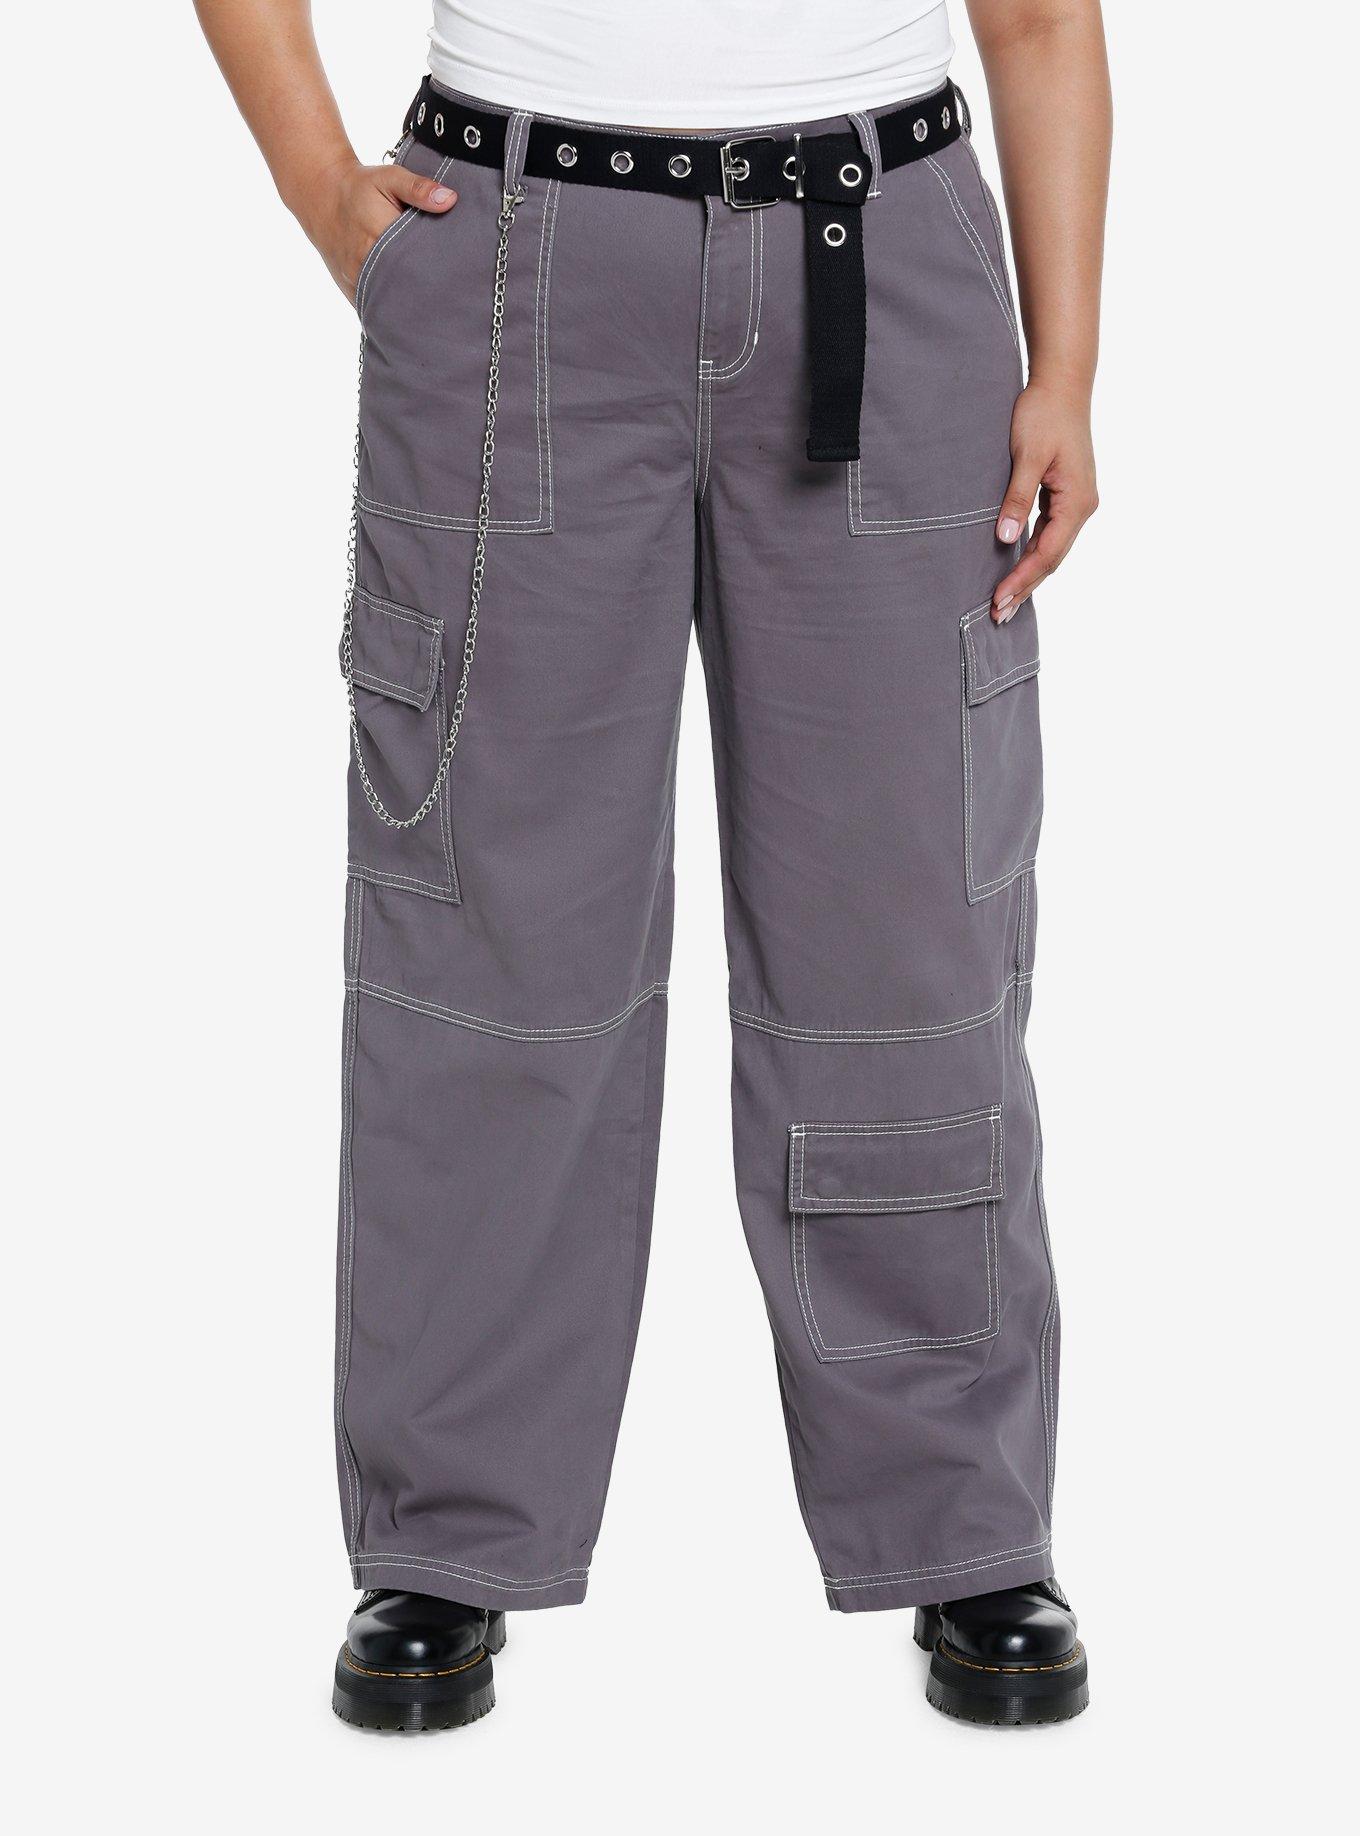 Devil Men's & Boy's Relaxed Fit Cotton Cargo Jogger Jeans Pants-Beige